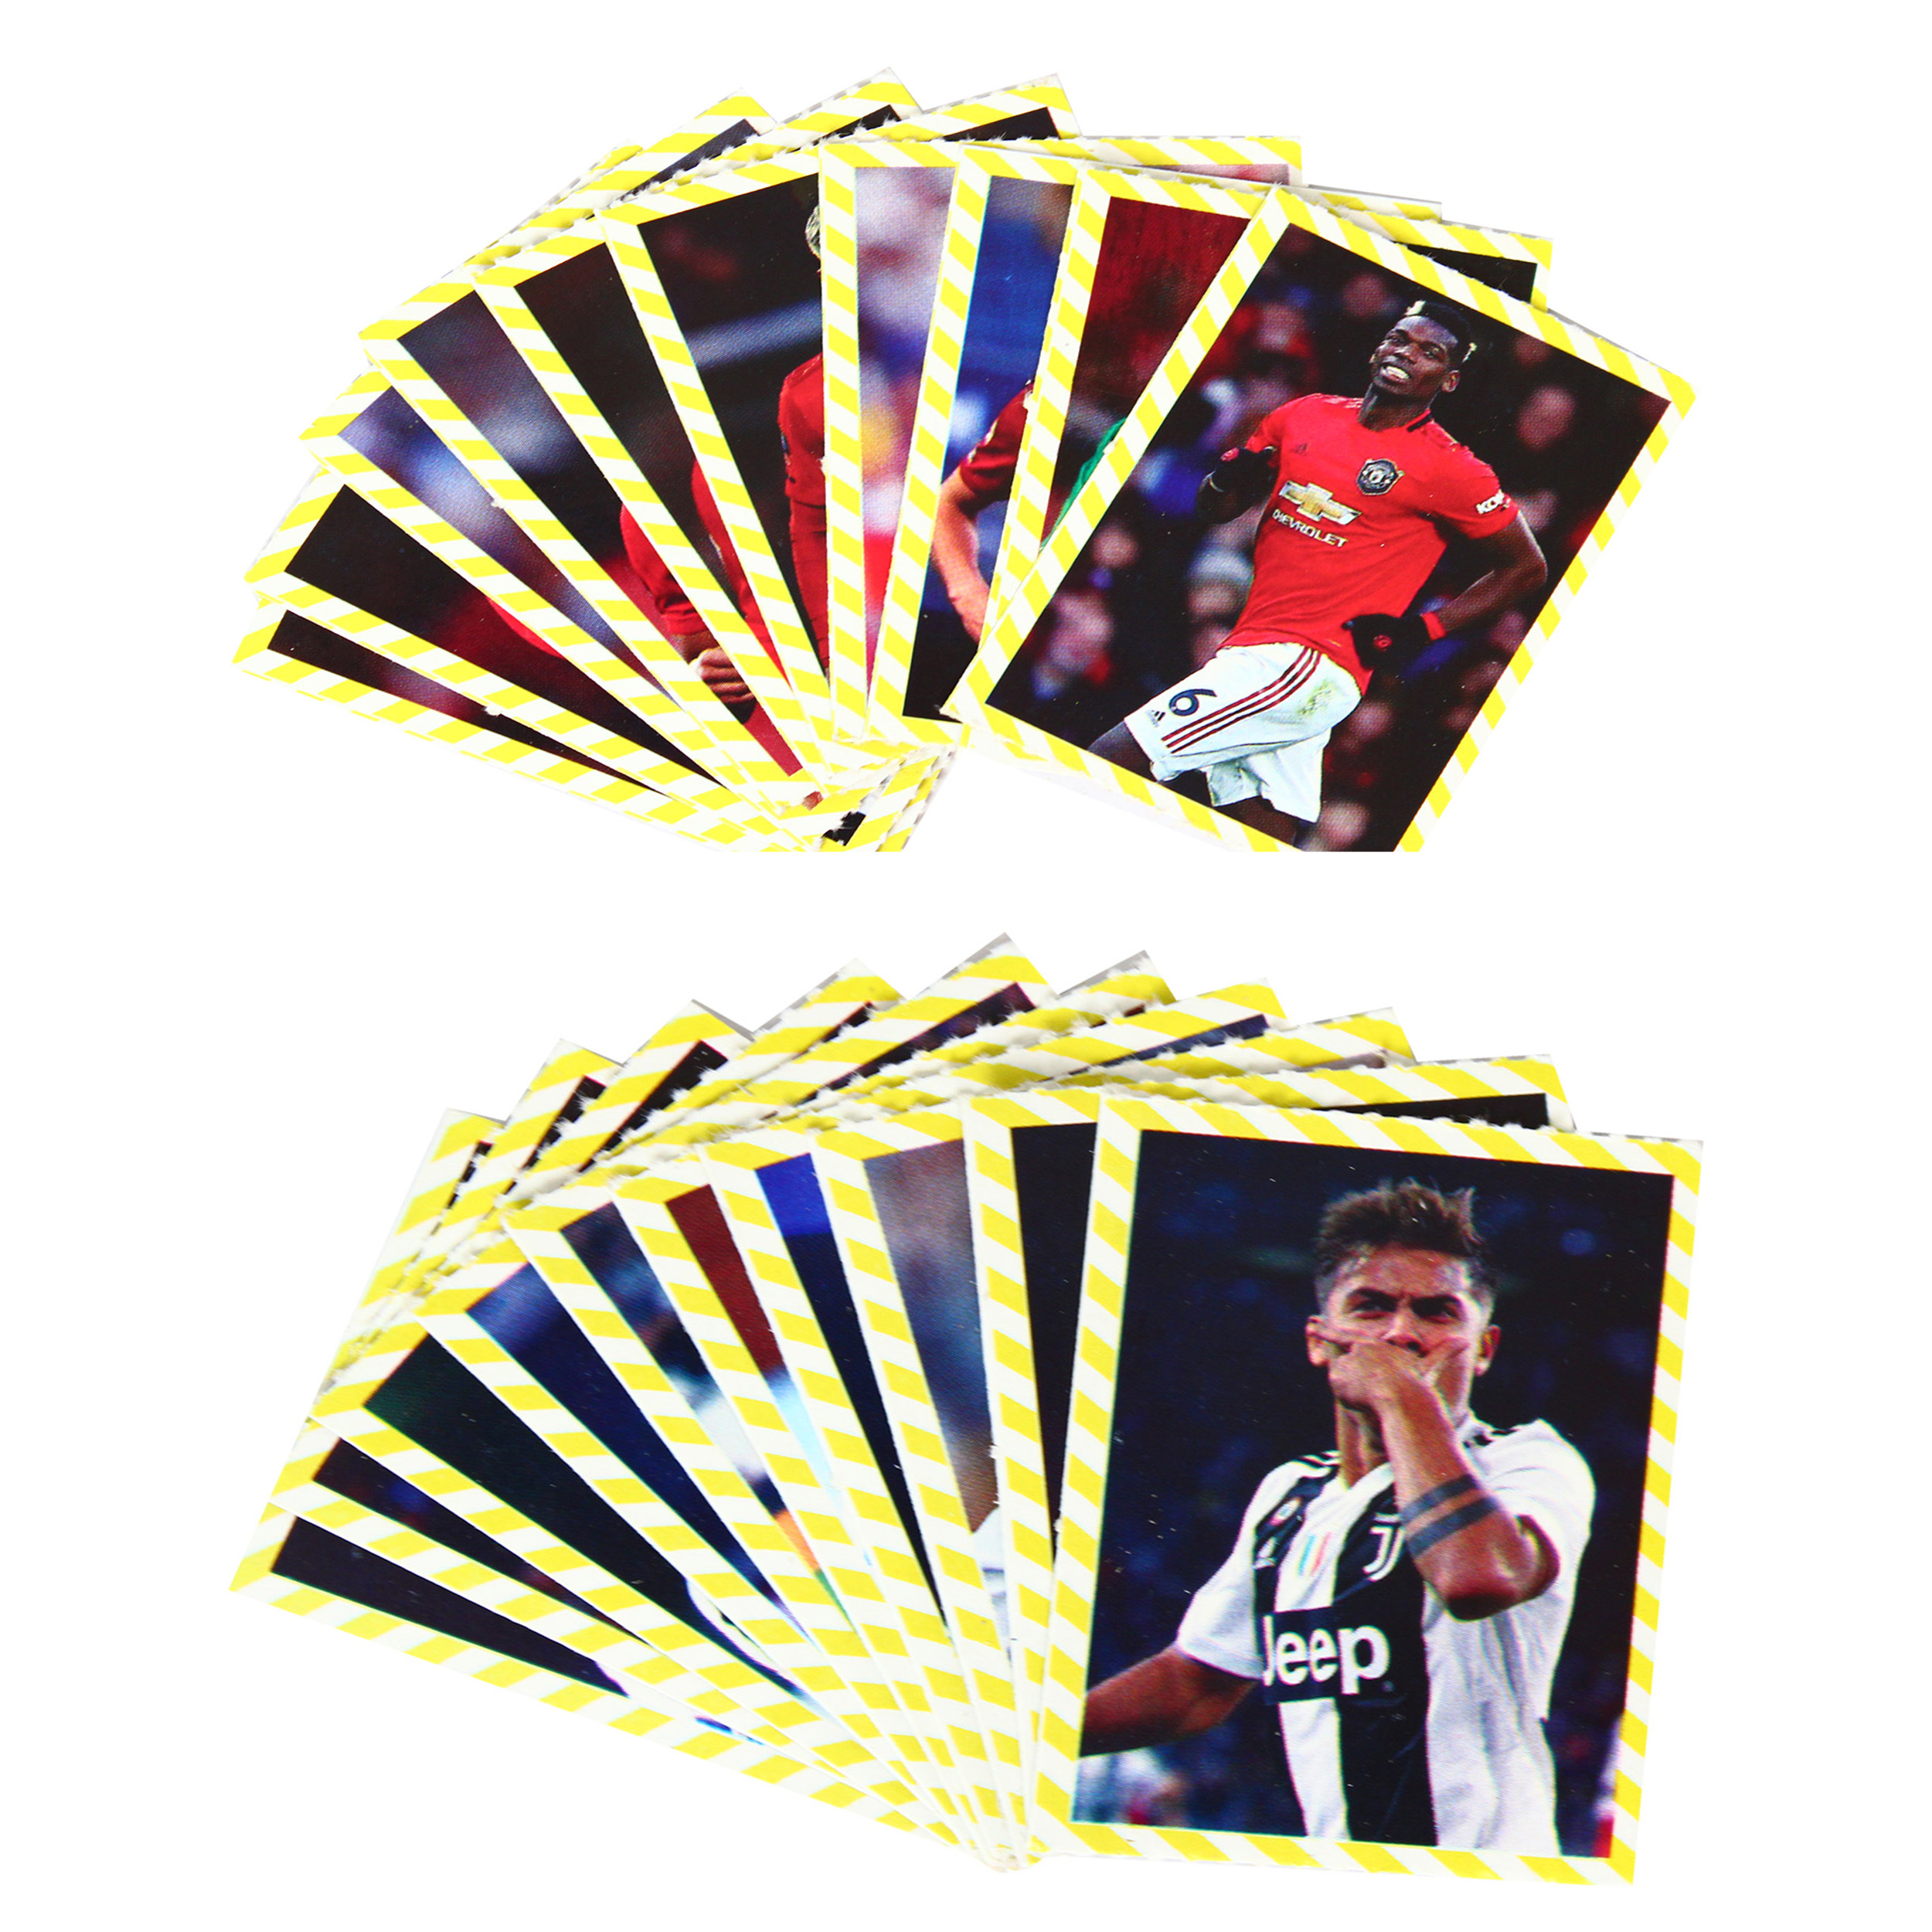 بازی فکری مدل کارت بازی فوتبال کد EUFA CP 02 مجموعه بیست عددی